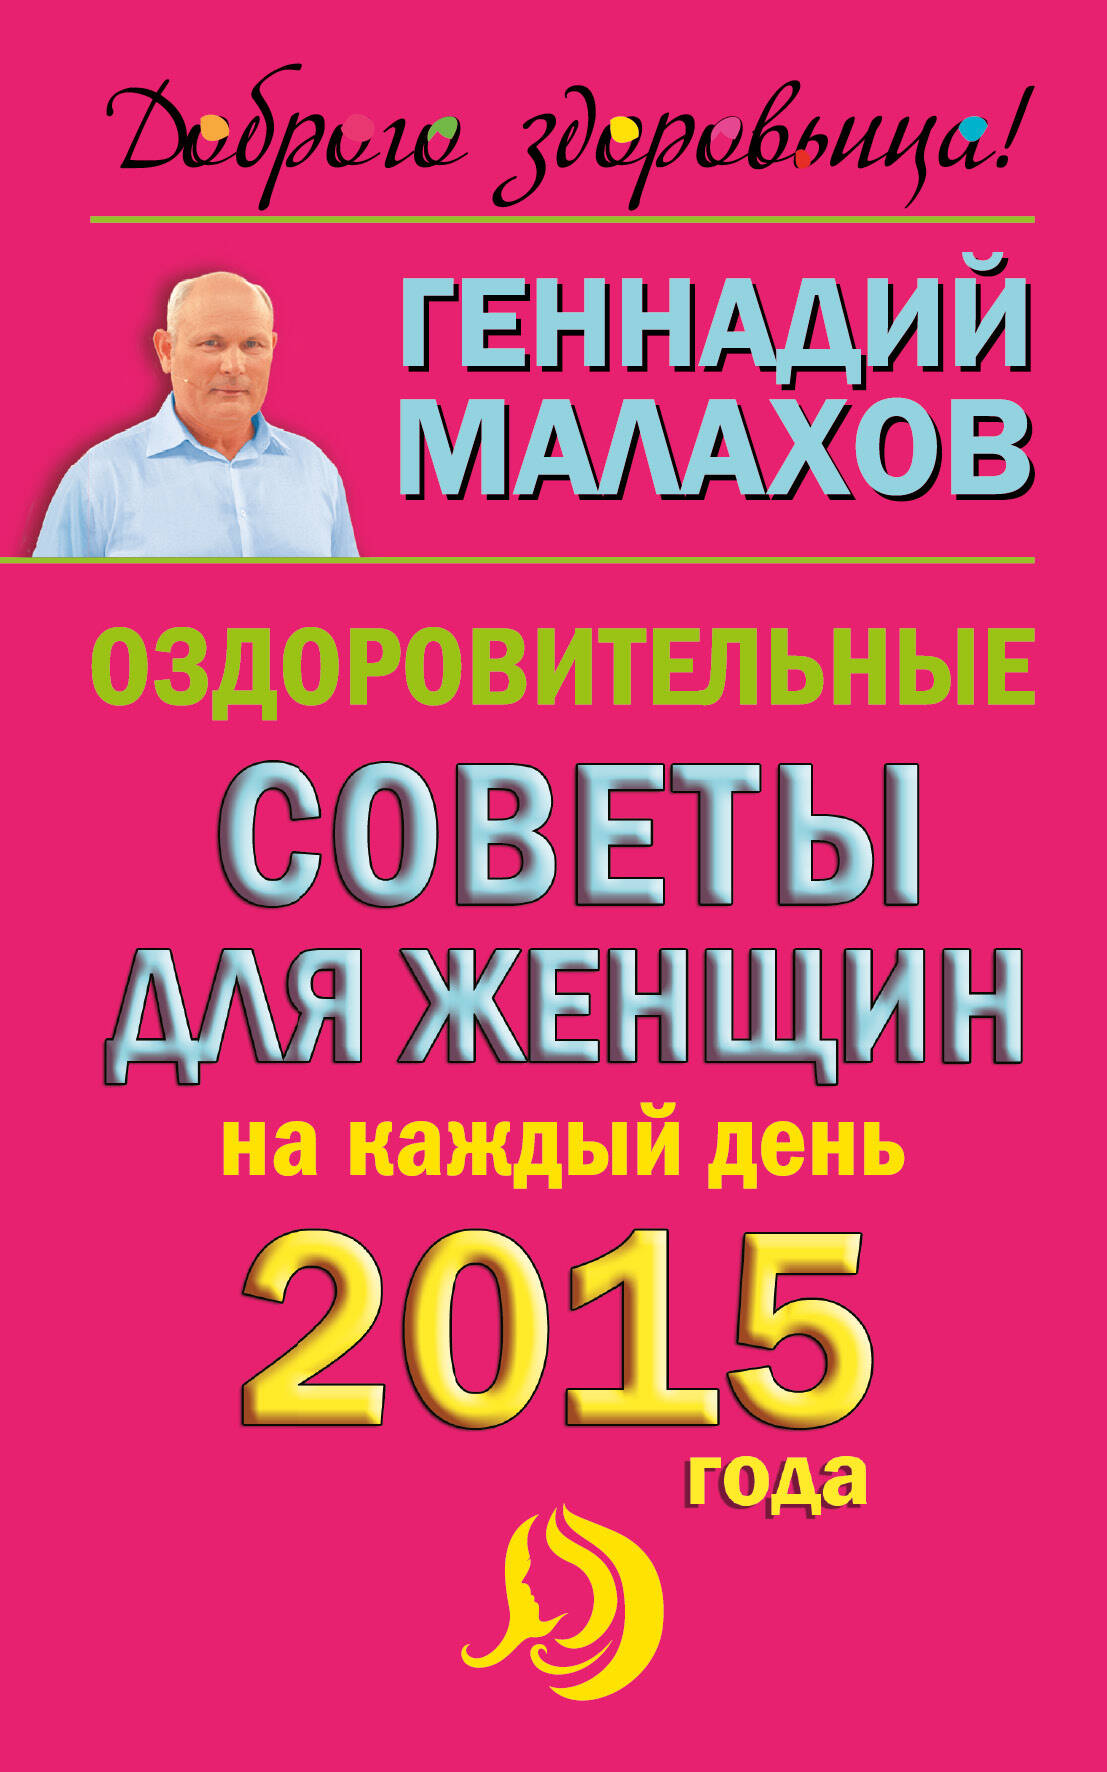 Малахов Геннадий Петрович Оздоровительные советы для женщин на каждый день 2015 года - страница 0